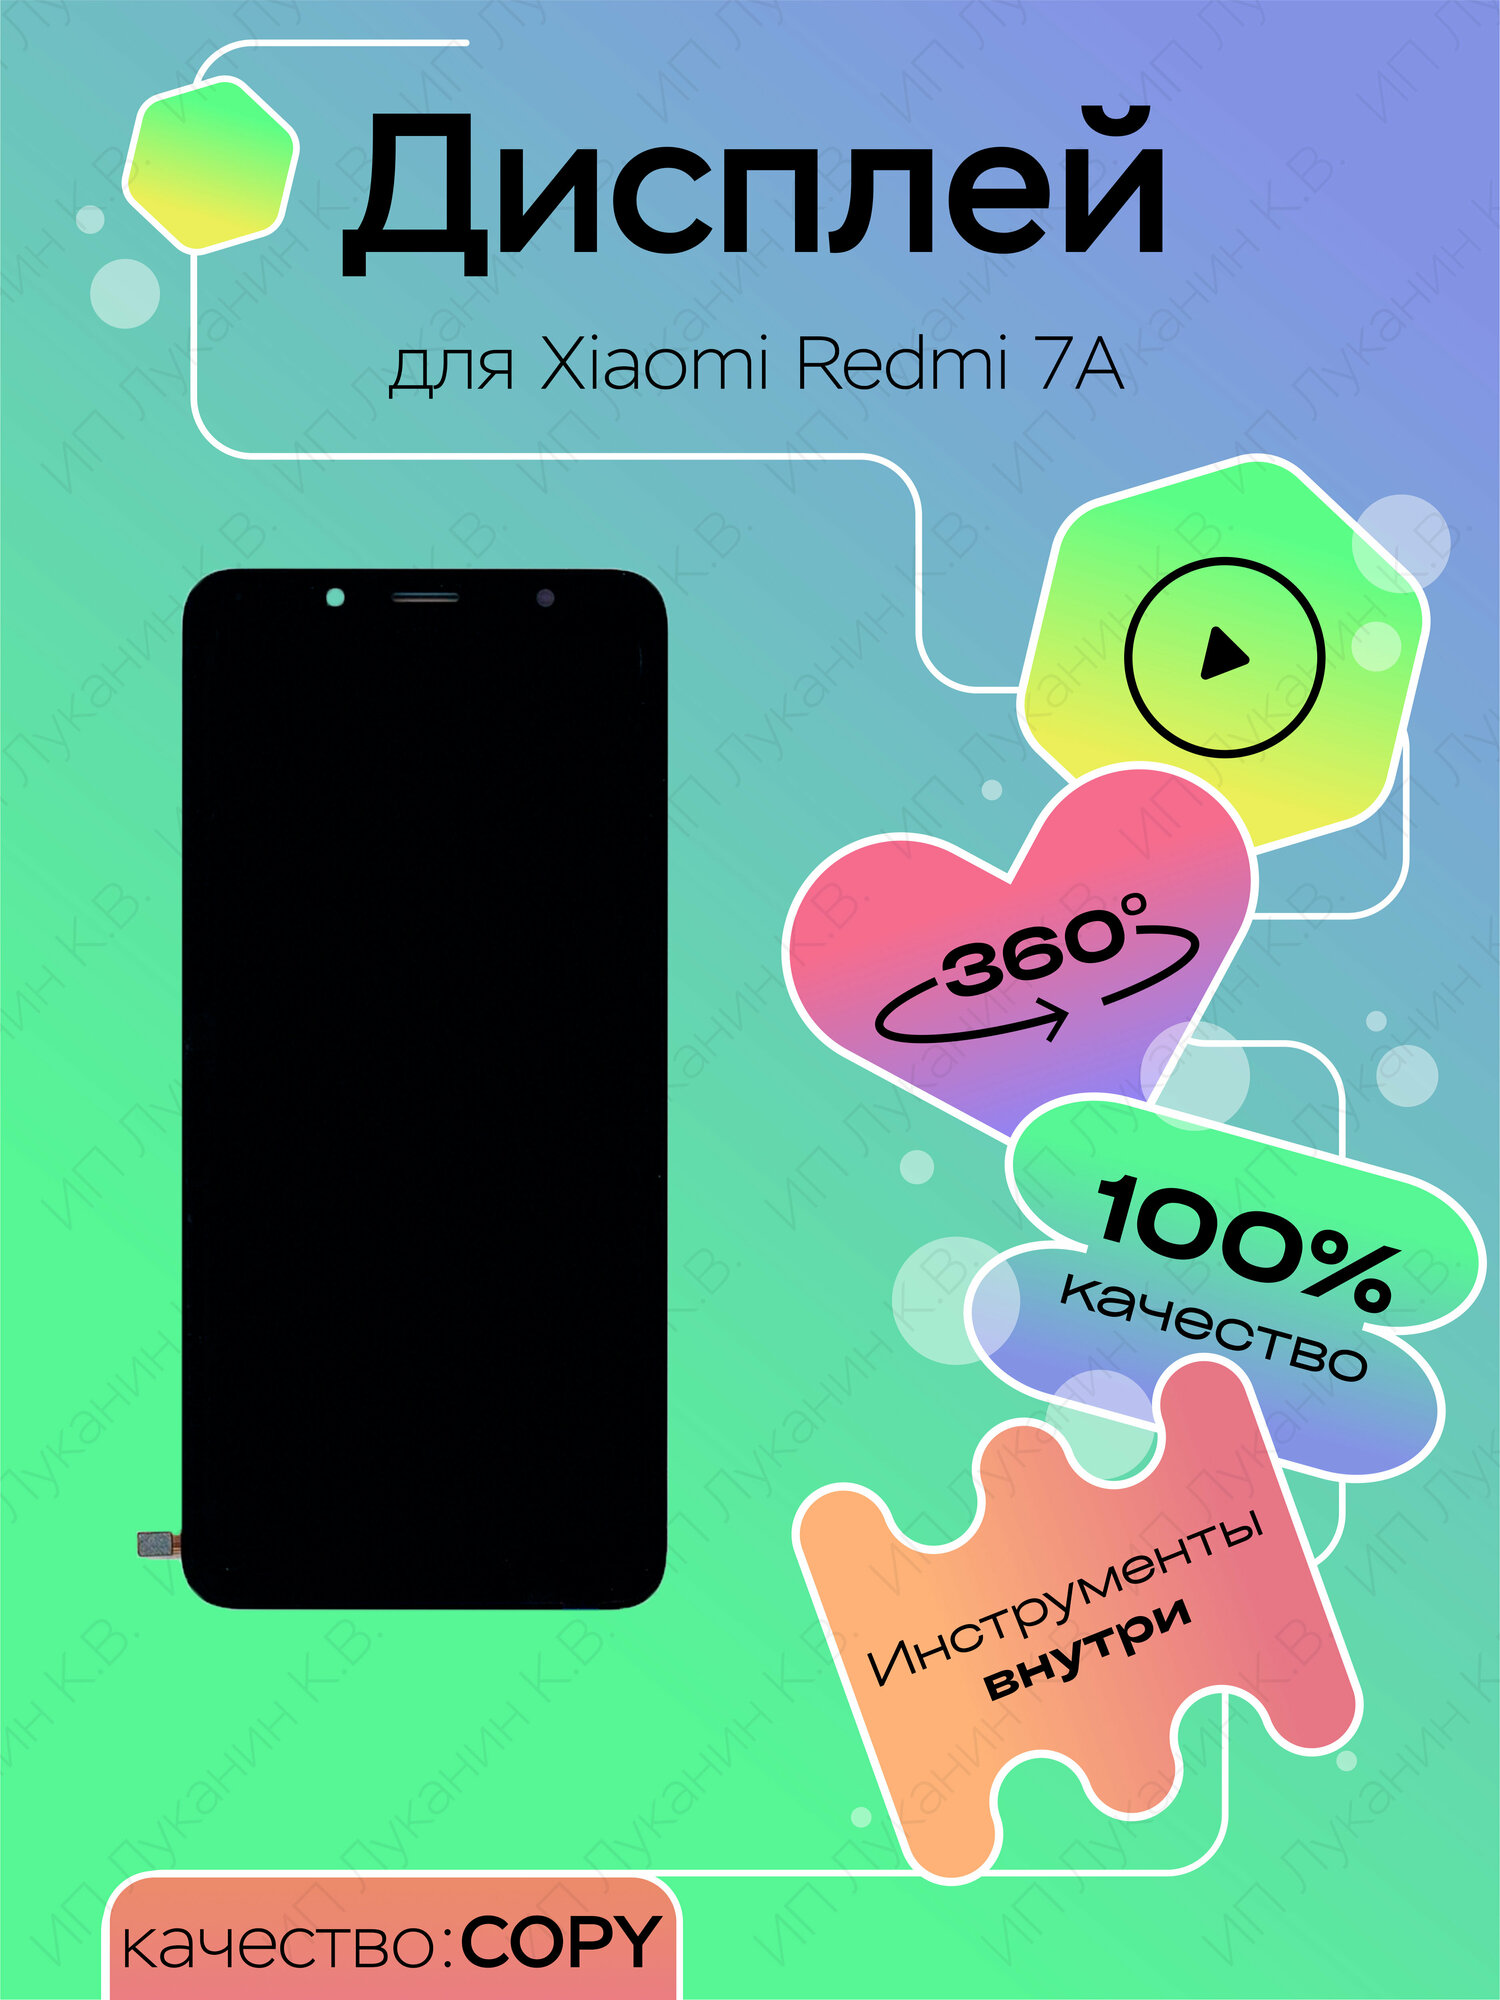 Дисплей для Xiaomi Redmi 7A